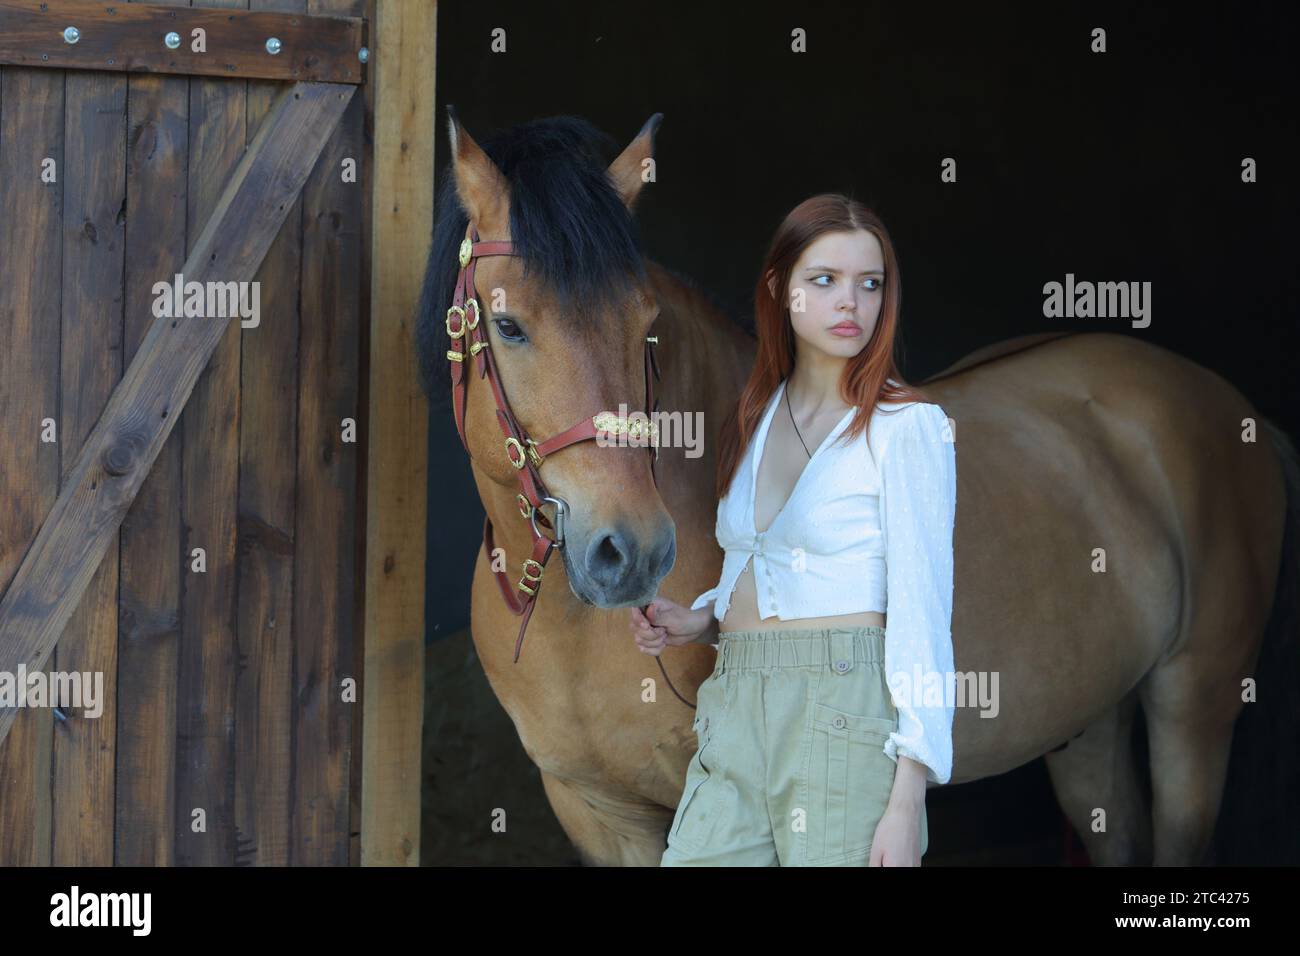 Bella ragazza di campagna in posa con un cavallo nella stalla Foto Stock